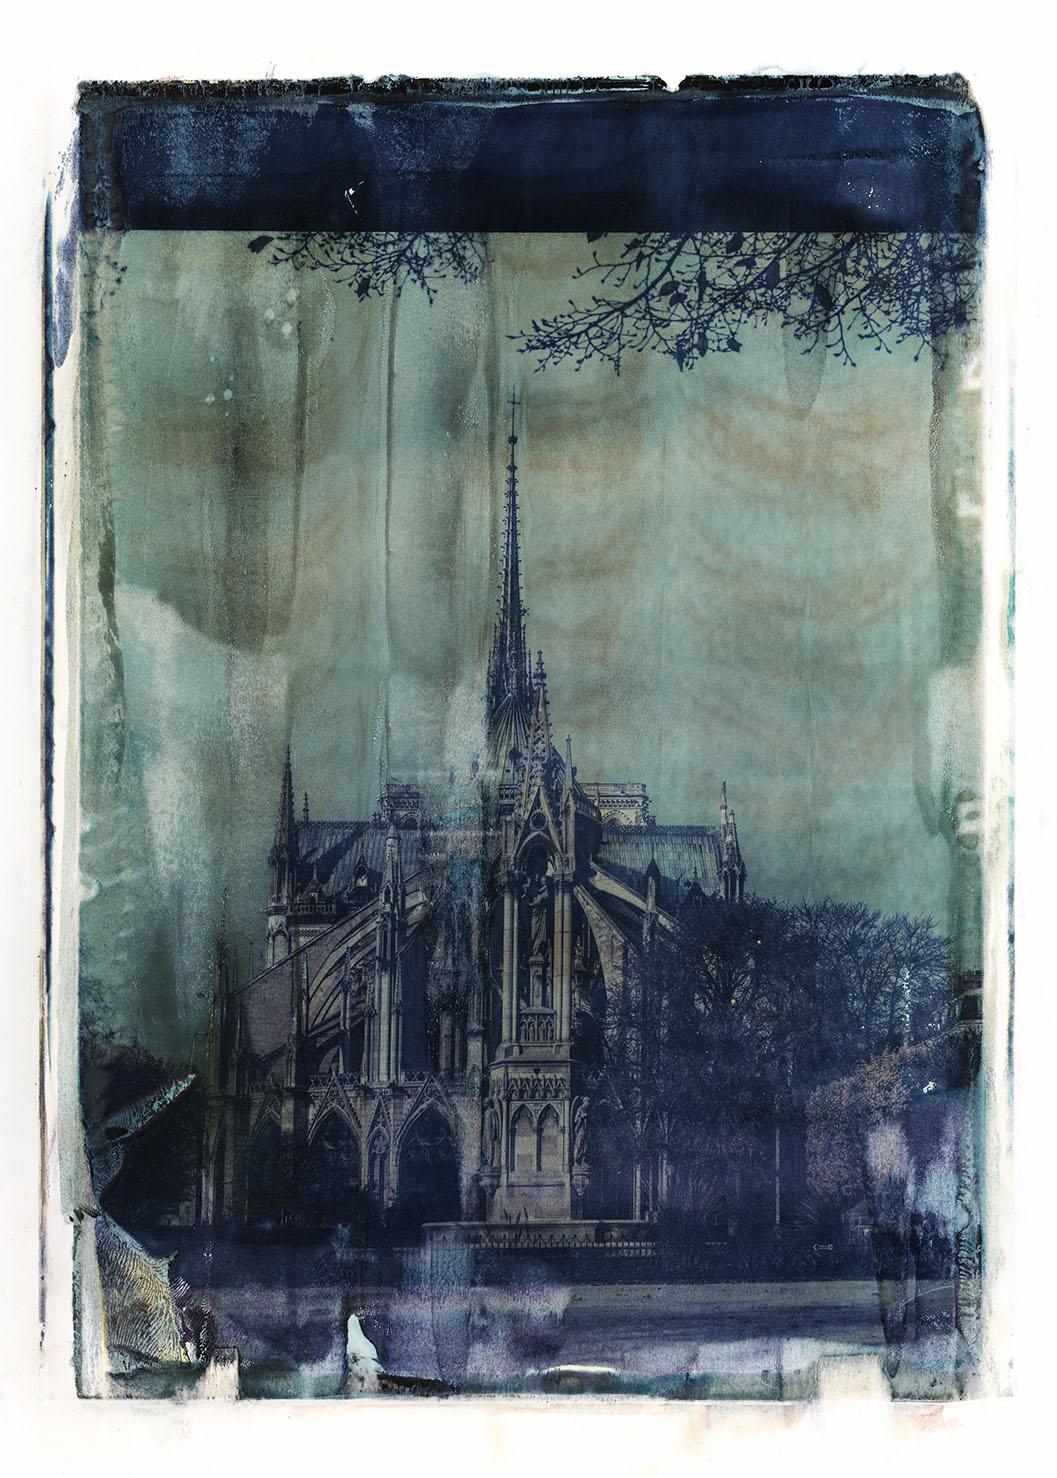 xulong zhang Landscape Photograph - Notre Dame 9 - Contemporary, 21st Century, Large Format Polaroid, Paris, Icons